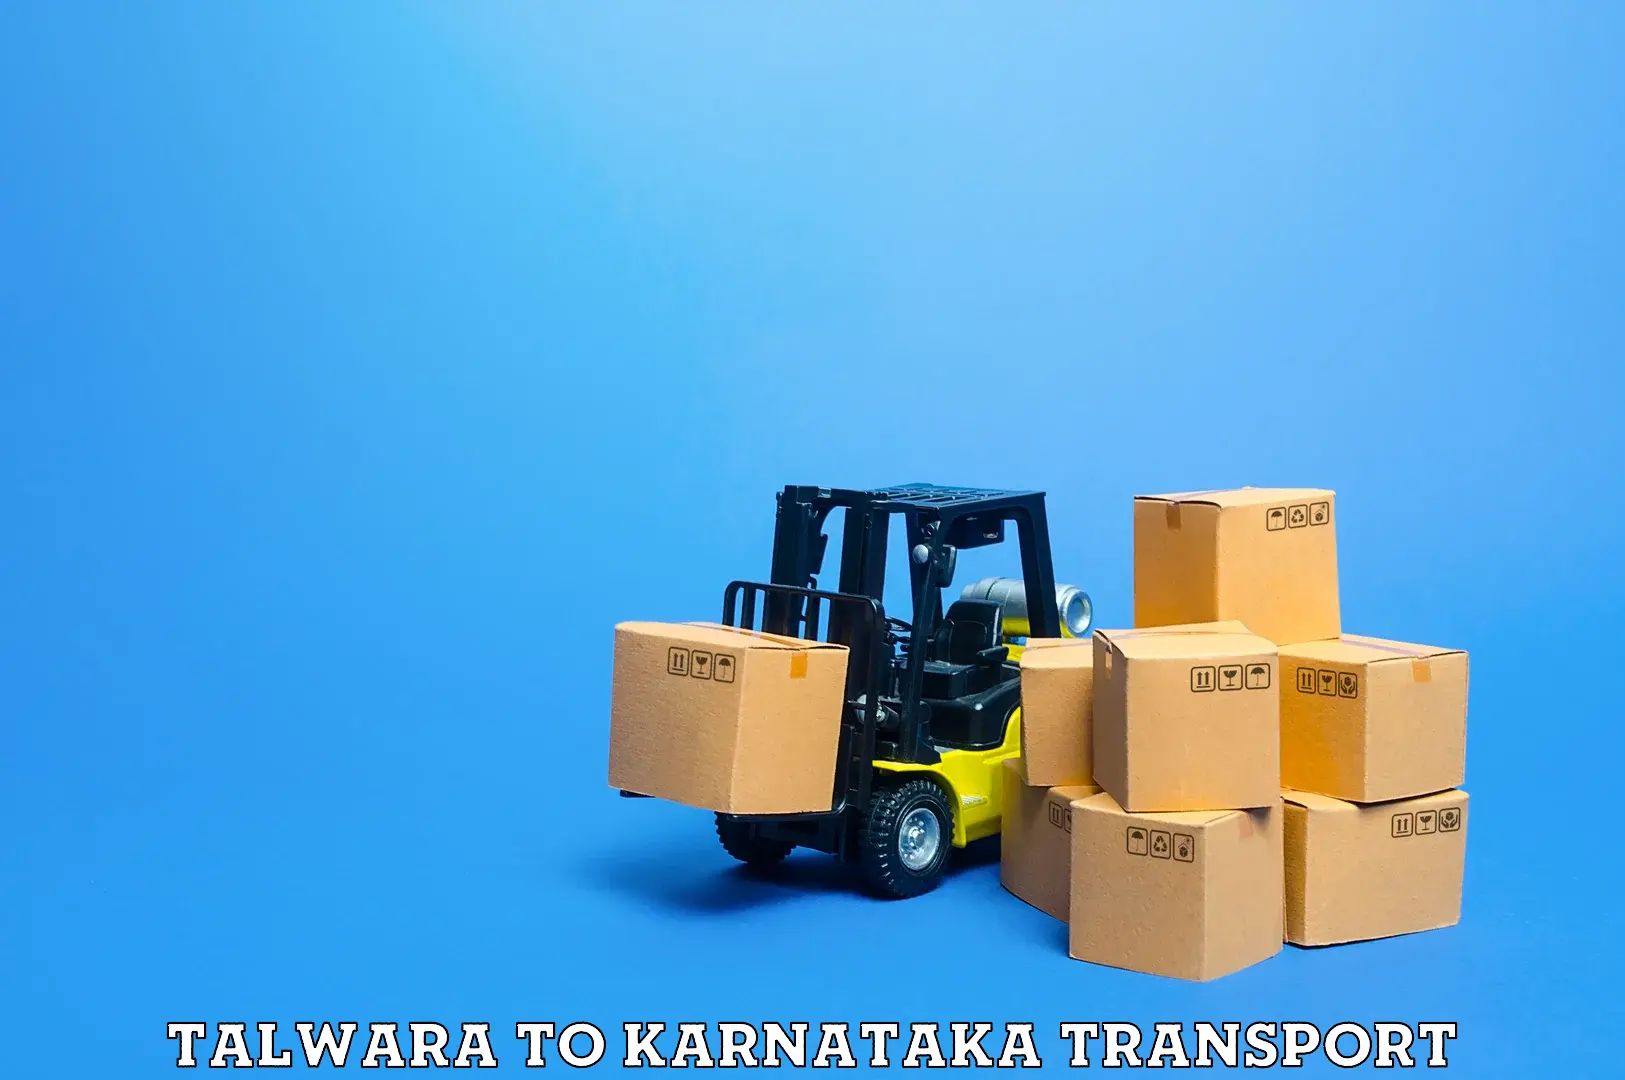 Lorry transport service Talwara to Karnataka